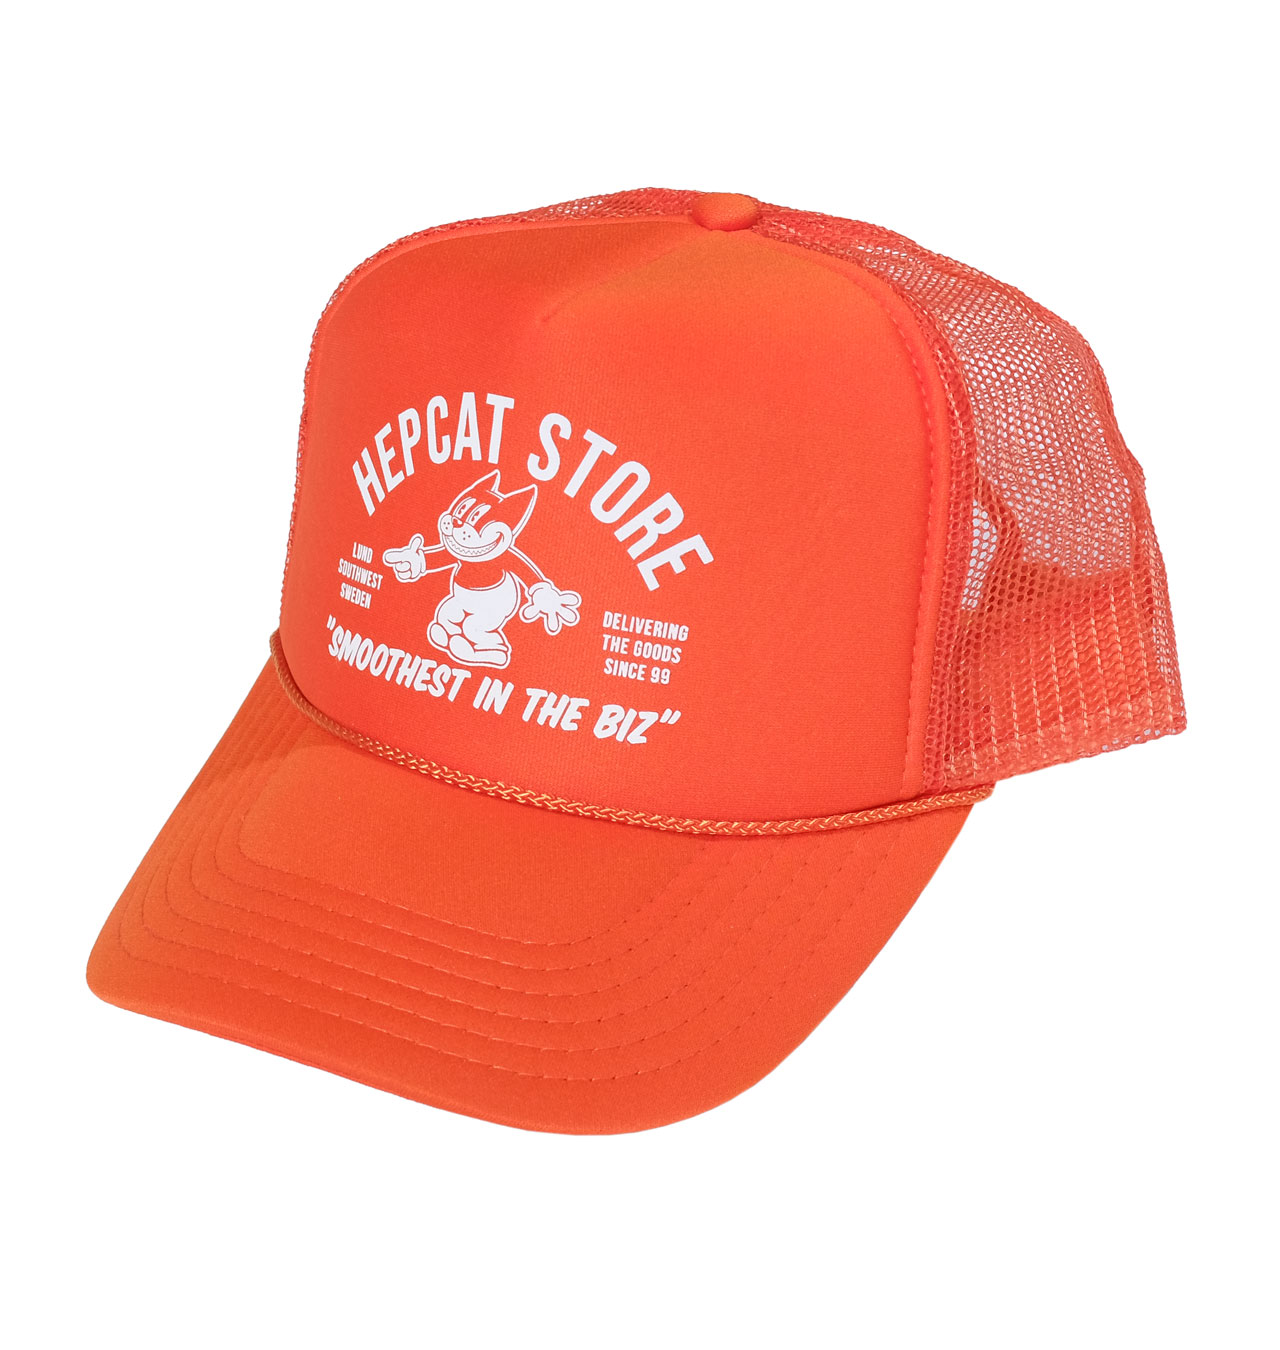 HepCat - Smoothest In The Bizz Trucker Cap - Orange